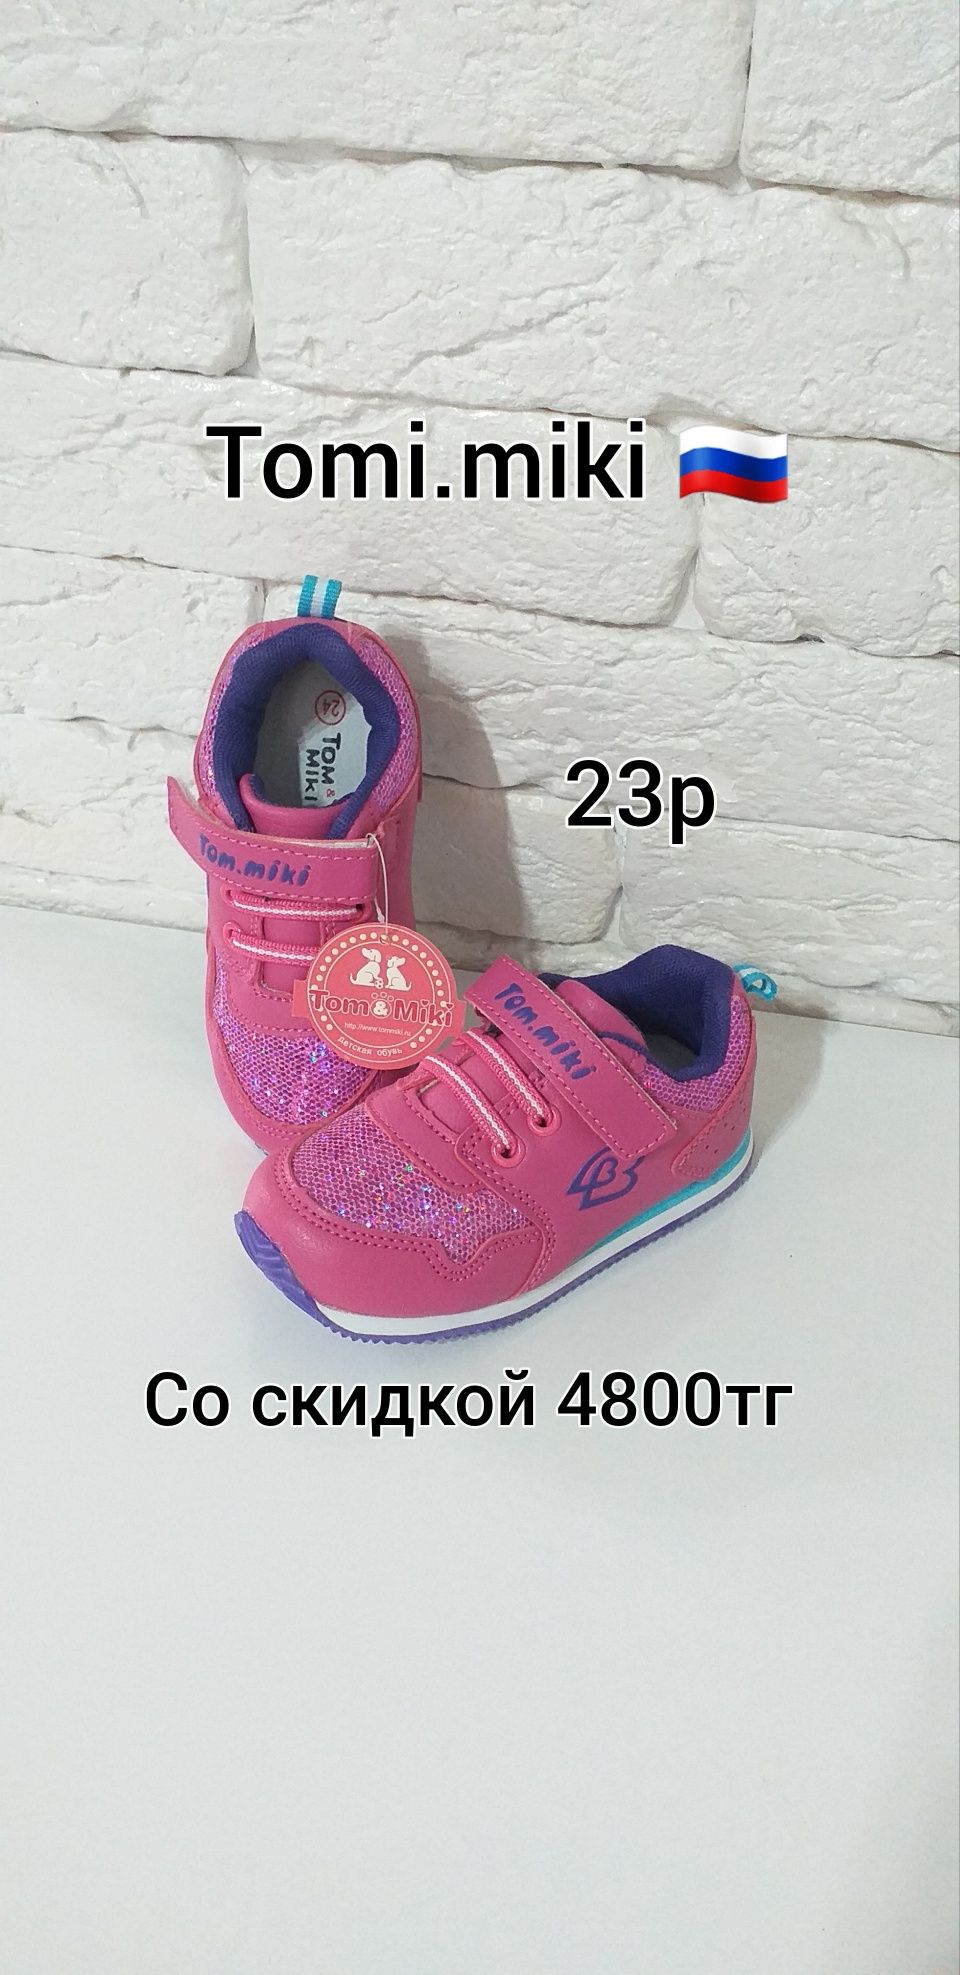 Распродажа! Кроссовки для мальчиков и девочек, Россия. Алматы обувь.